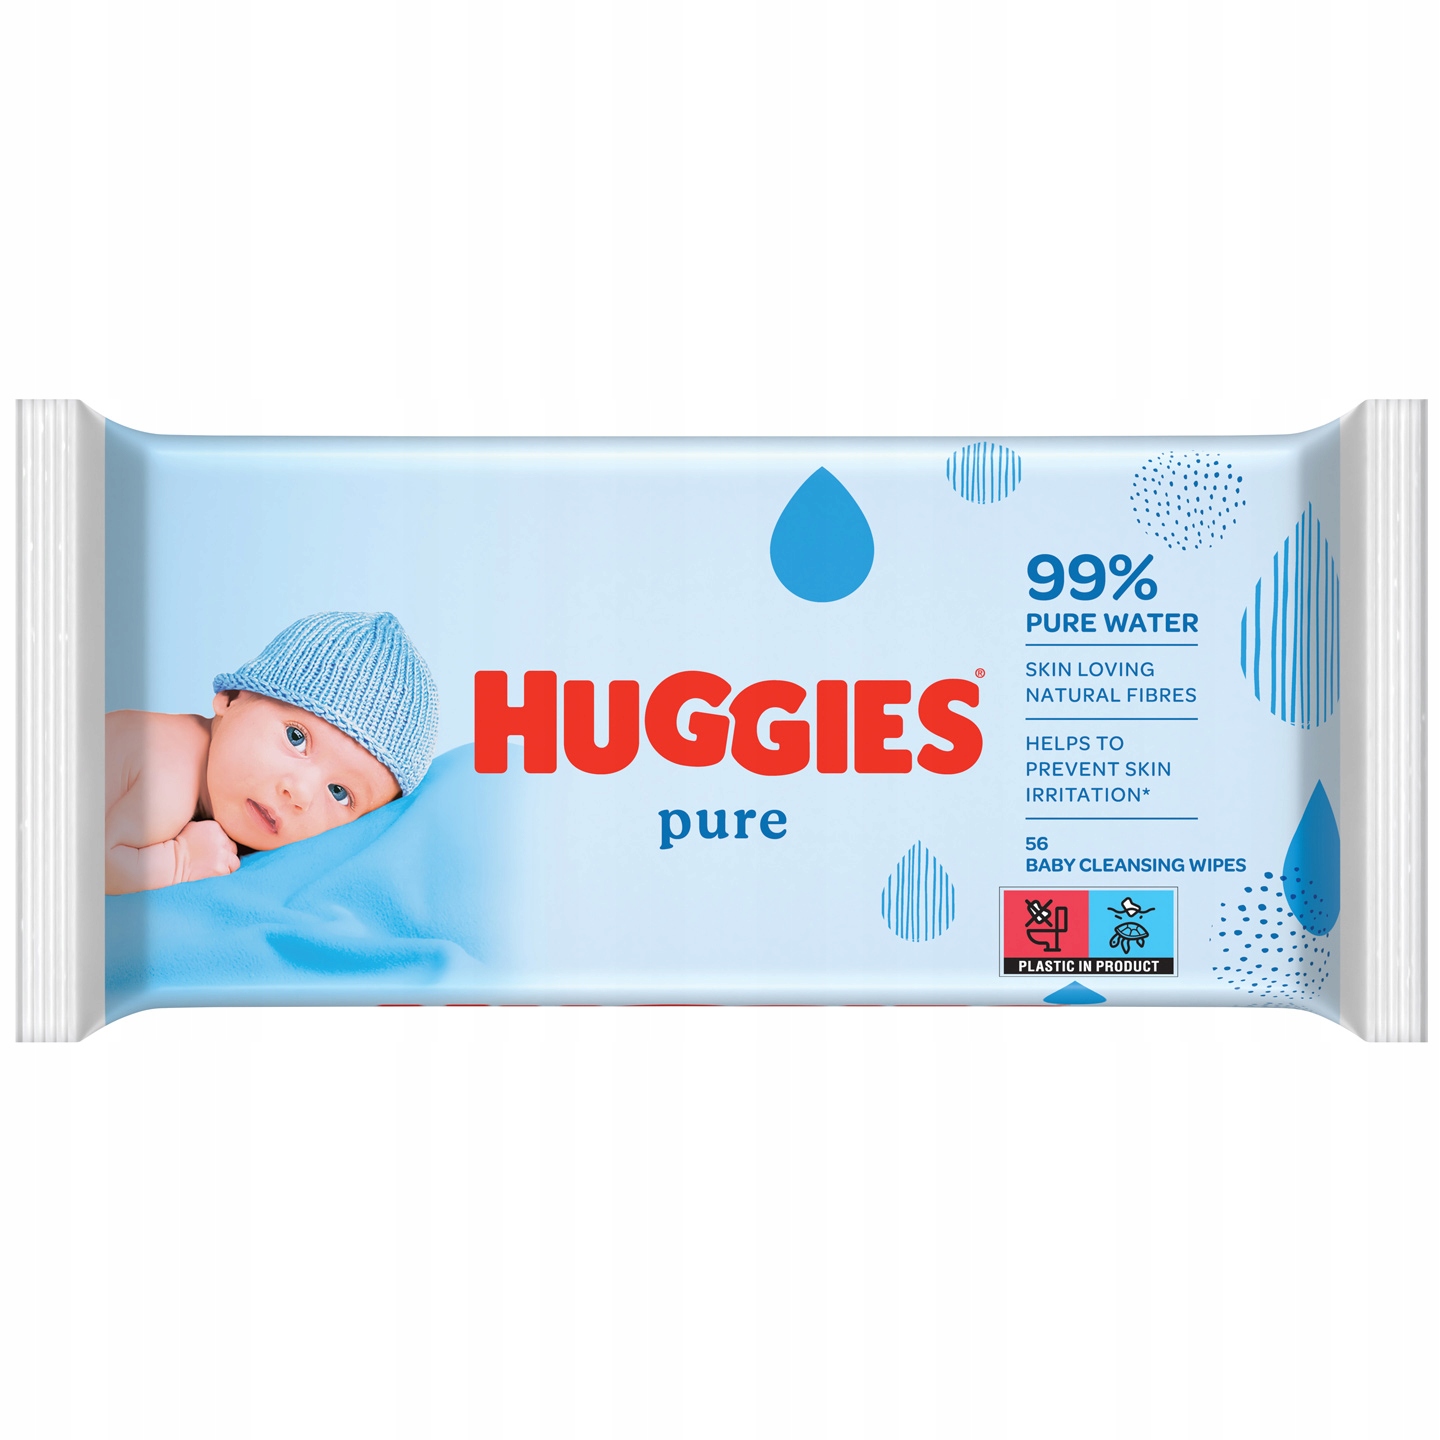 huggies pure opinie